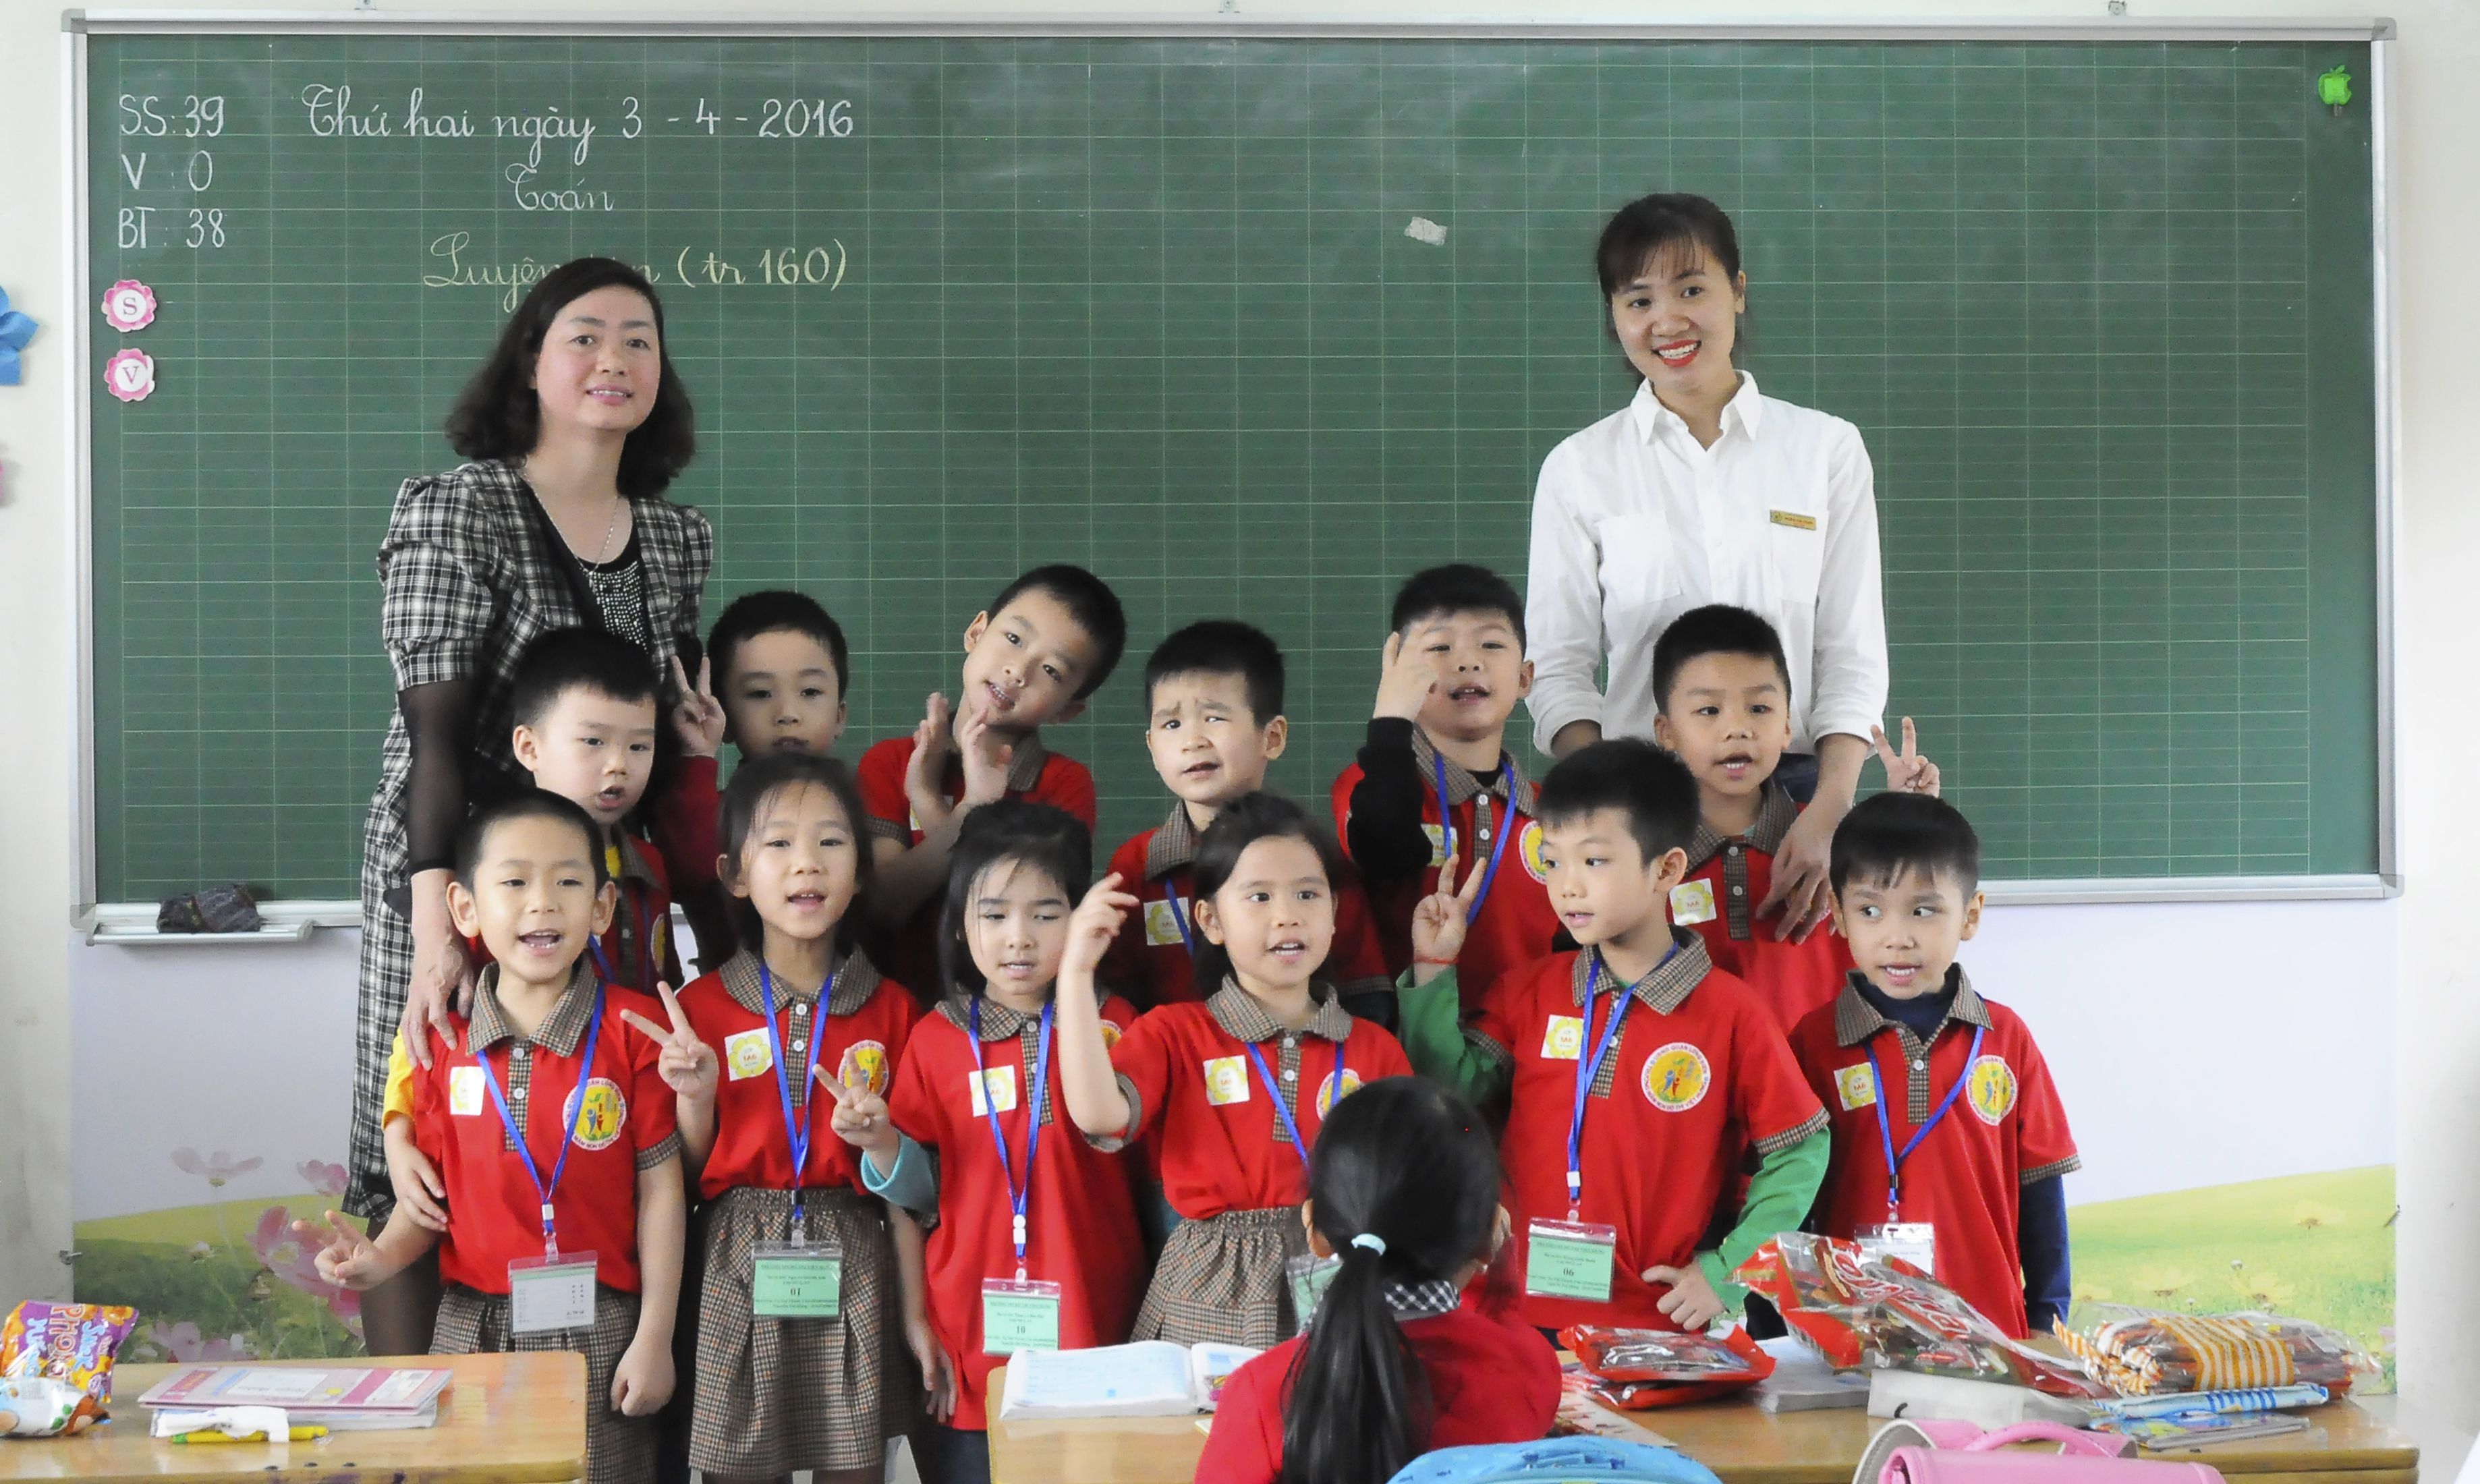 Khối mẫu giáo lớn giao lưu tại trường tiểu học Đô thị Việt hưng (22).jpg